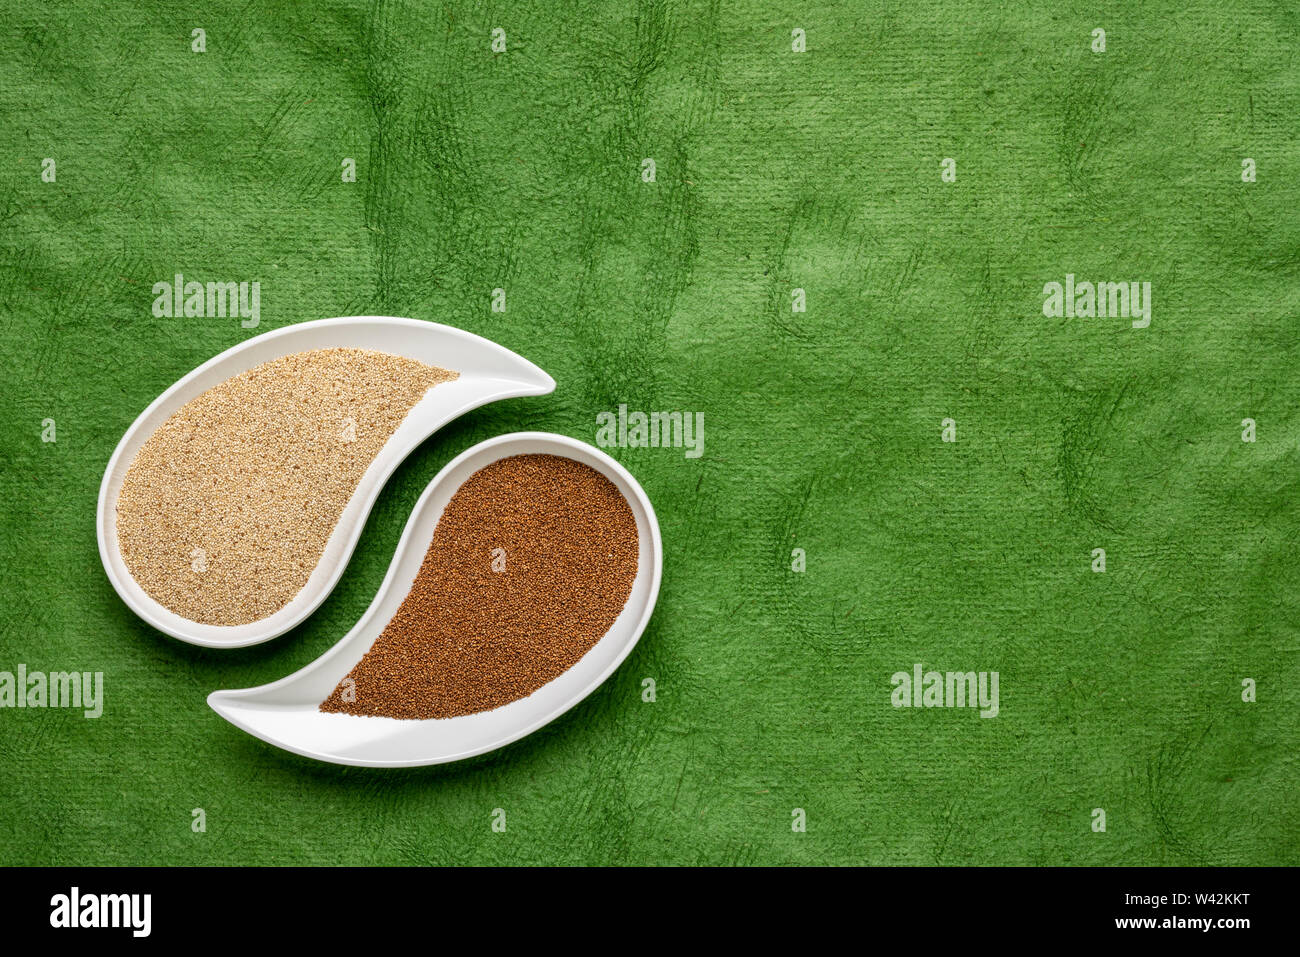 Glutenfreie Braun und Elfenbein teff Korn auf teardrop Form Schüssel gegen grüne strukturiertes Papier - wichtige Nahrungsmittel Getreide in Äthiopien und Eritrea Stockfoto